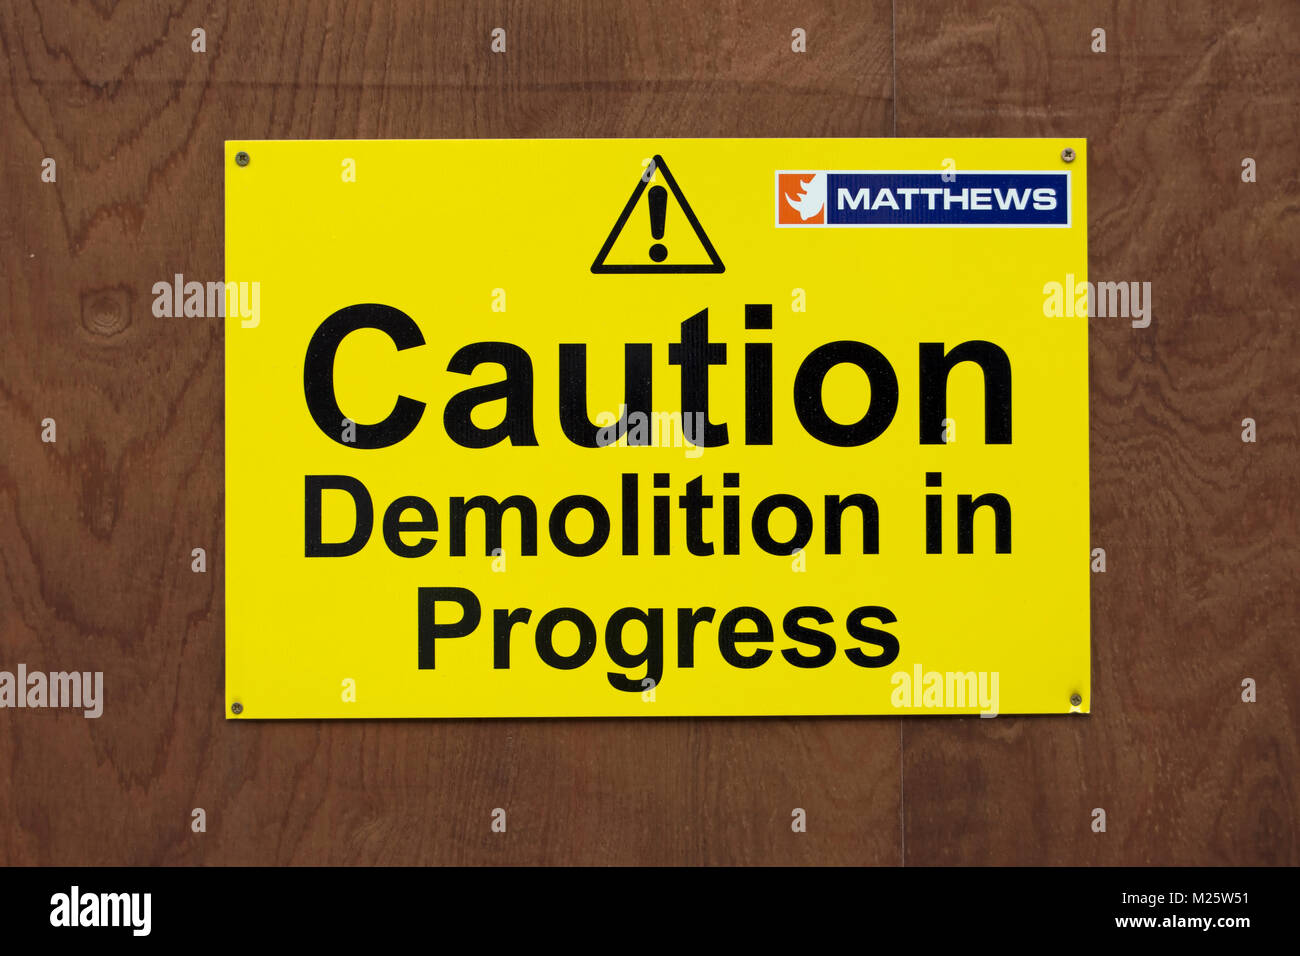 Vorsicht Abriss im Gange Warnschild, mit Ausrufezeichen und Logo der Demolition Company matthews Stockfoto